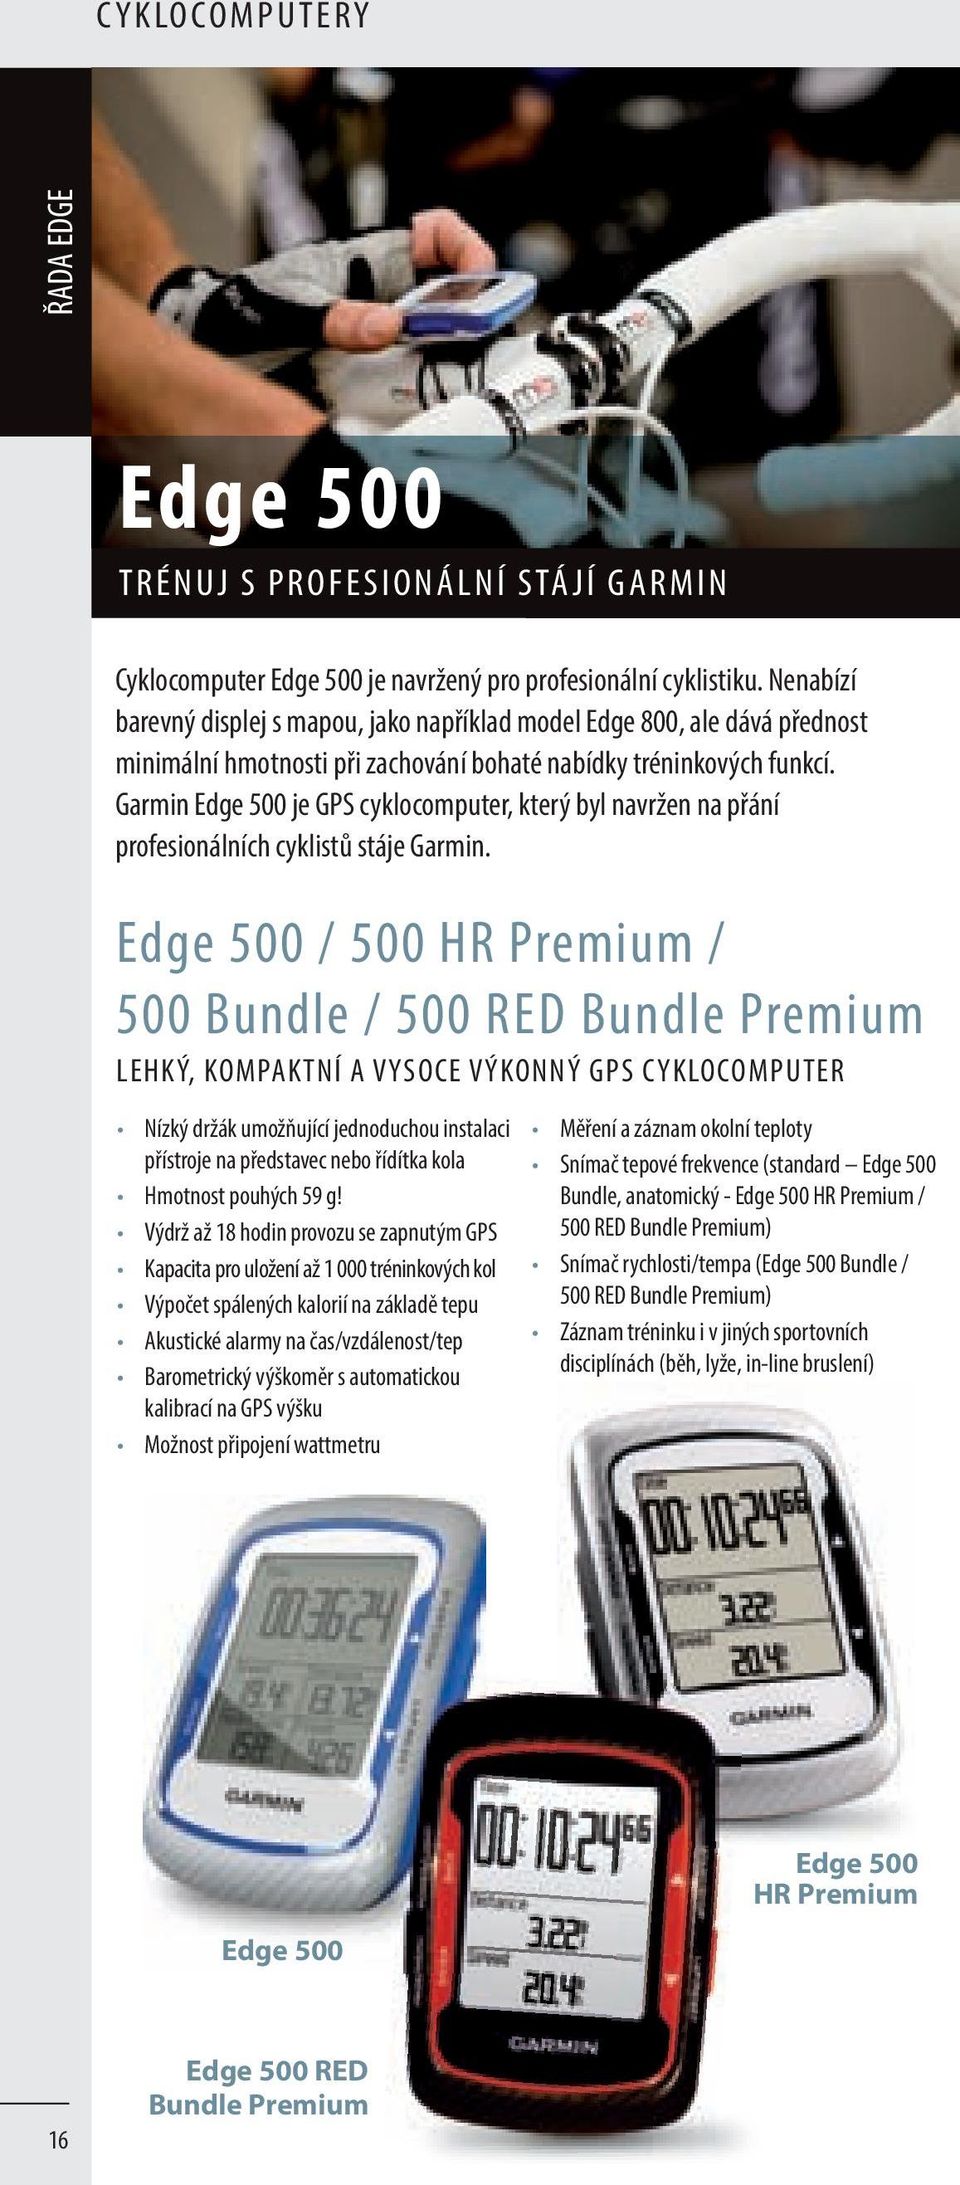 Garmin Edge 500 je GPS cyklocomputer, který byl navržen na přání profesionálních cyklistů stáje Garmin.